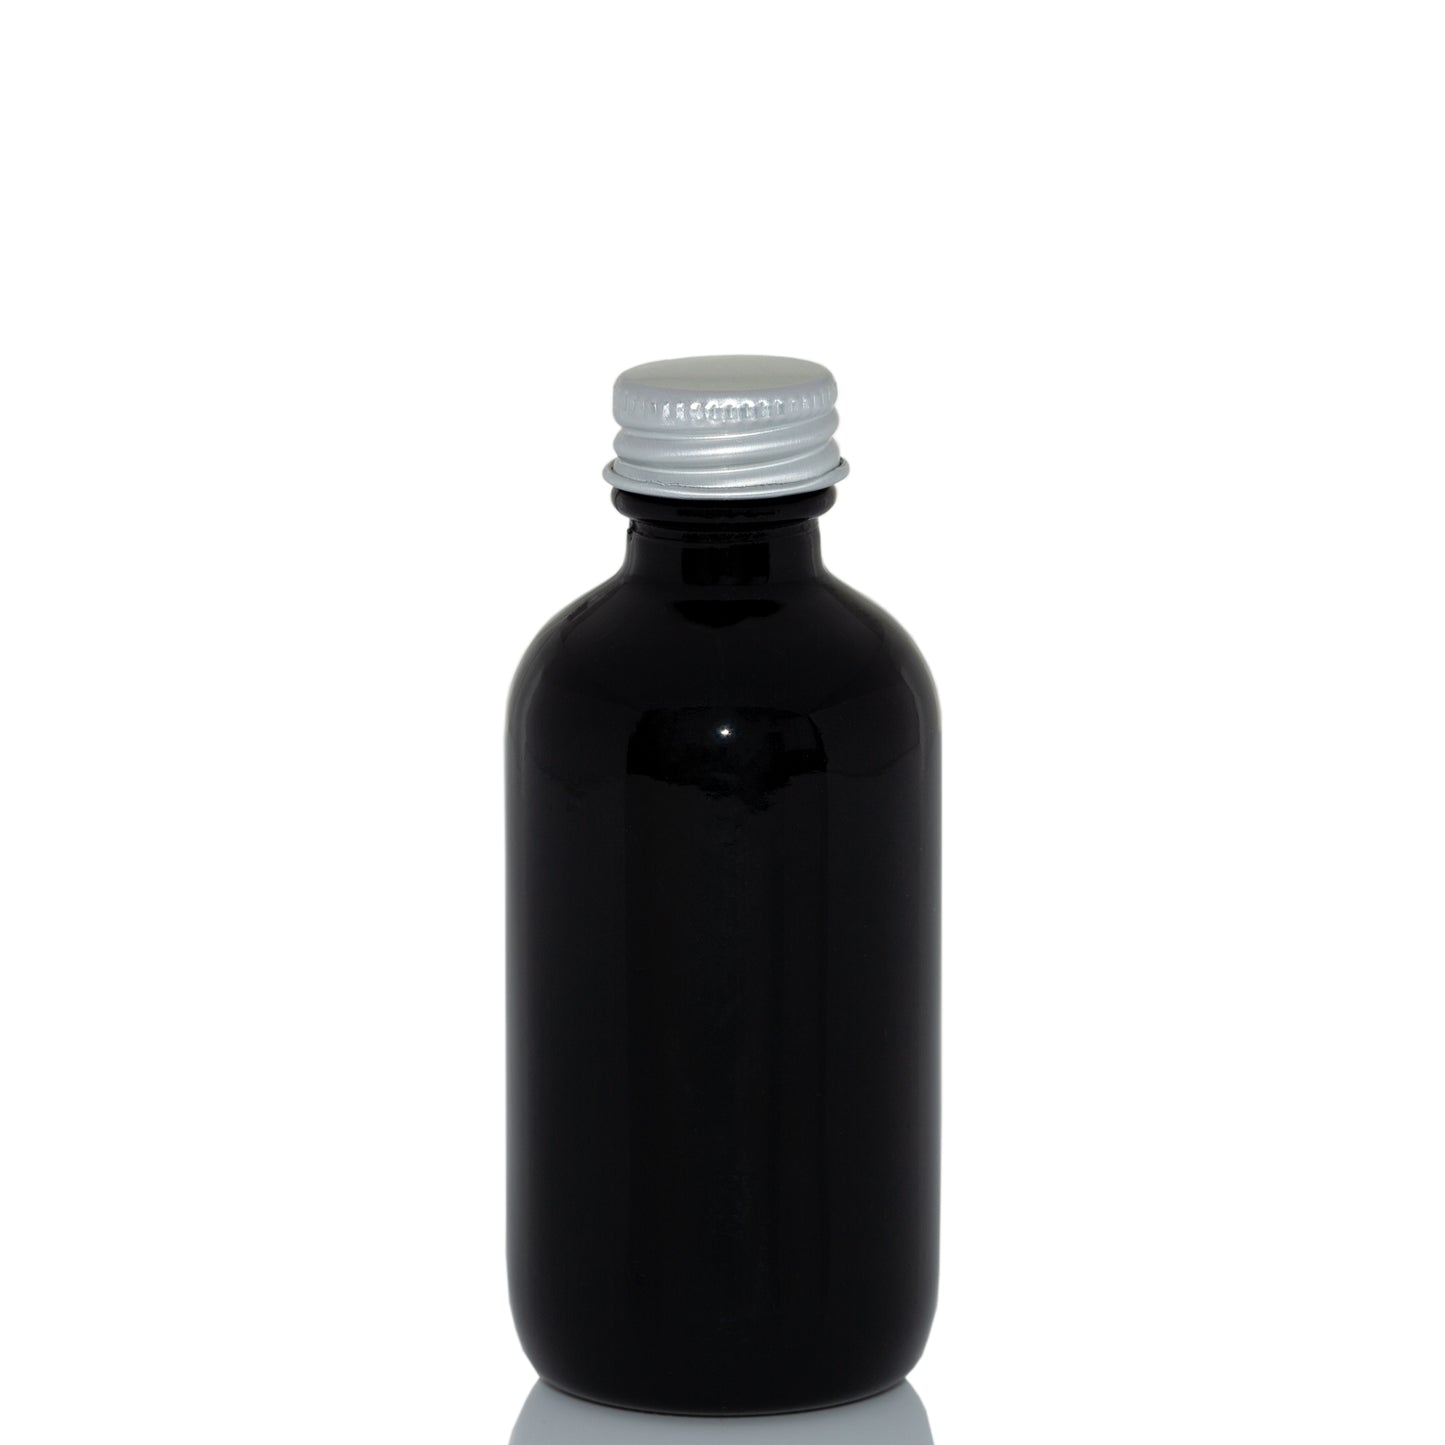 2 oz Black Glass Bottle with 20-400 Aluminum Cap